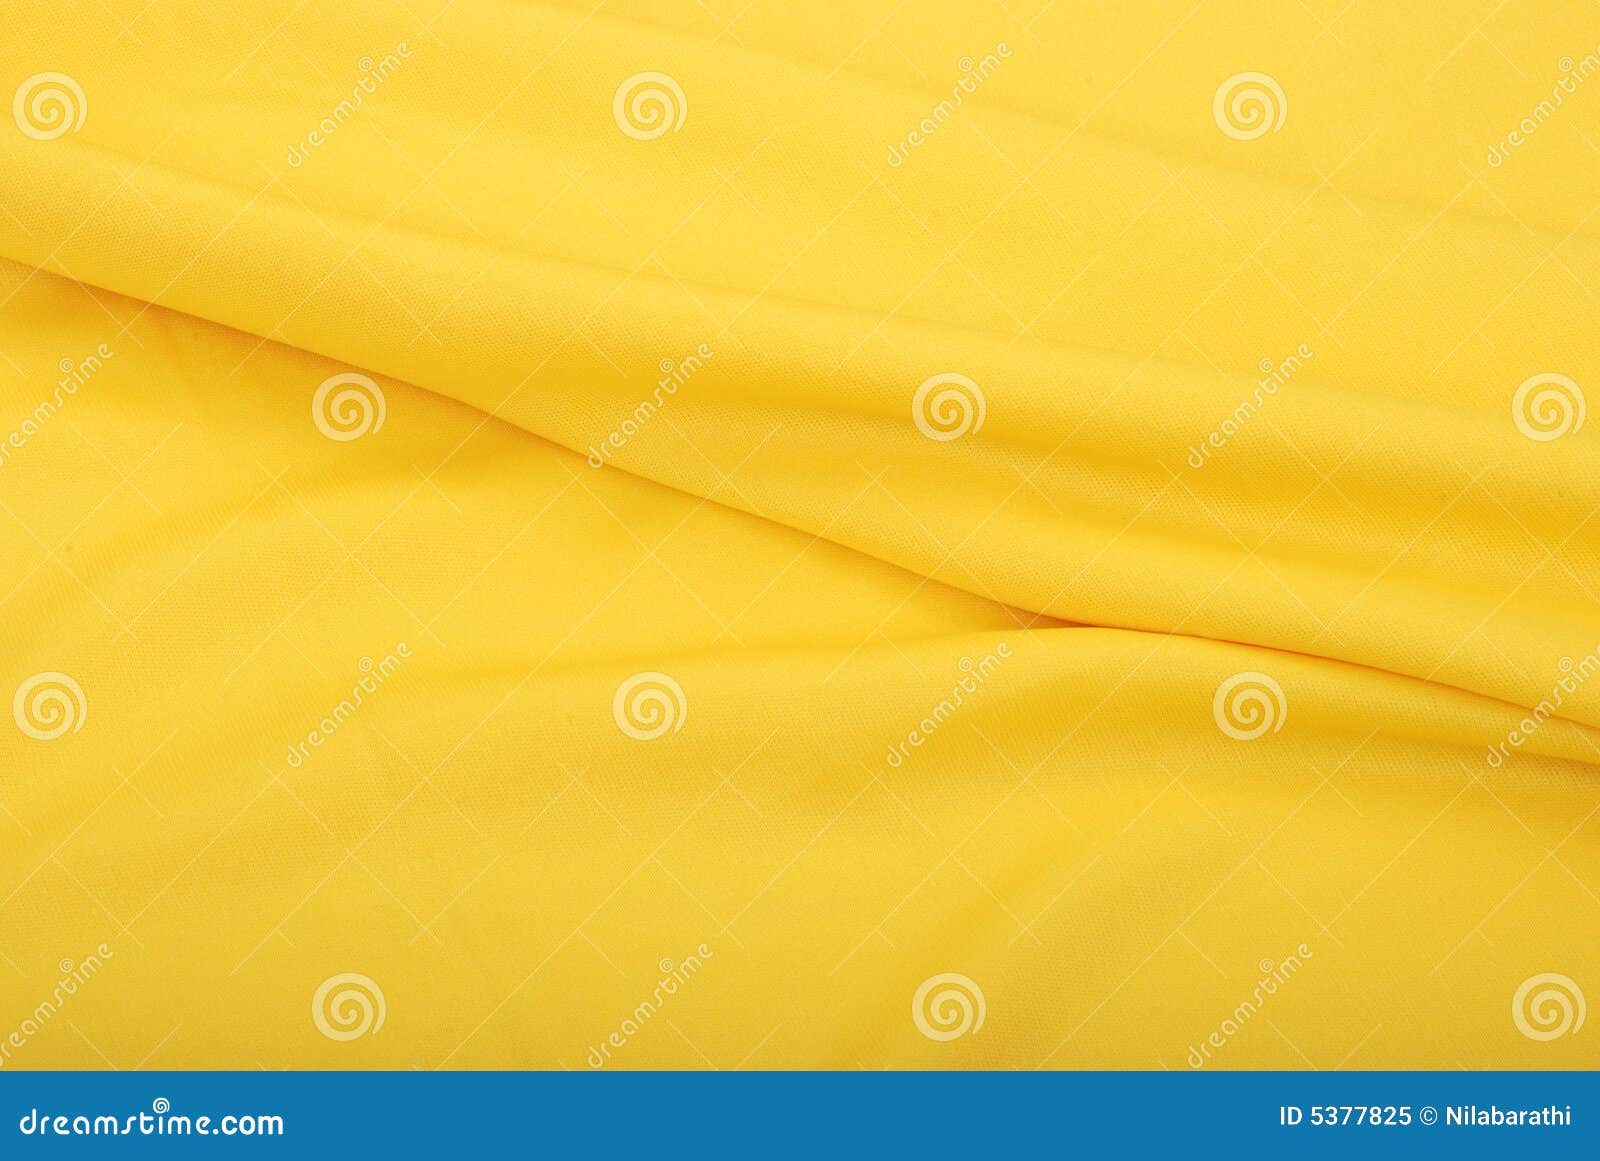 ткань. желтый цвет ткани предпосылки silk мягкий